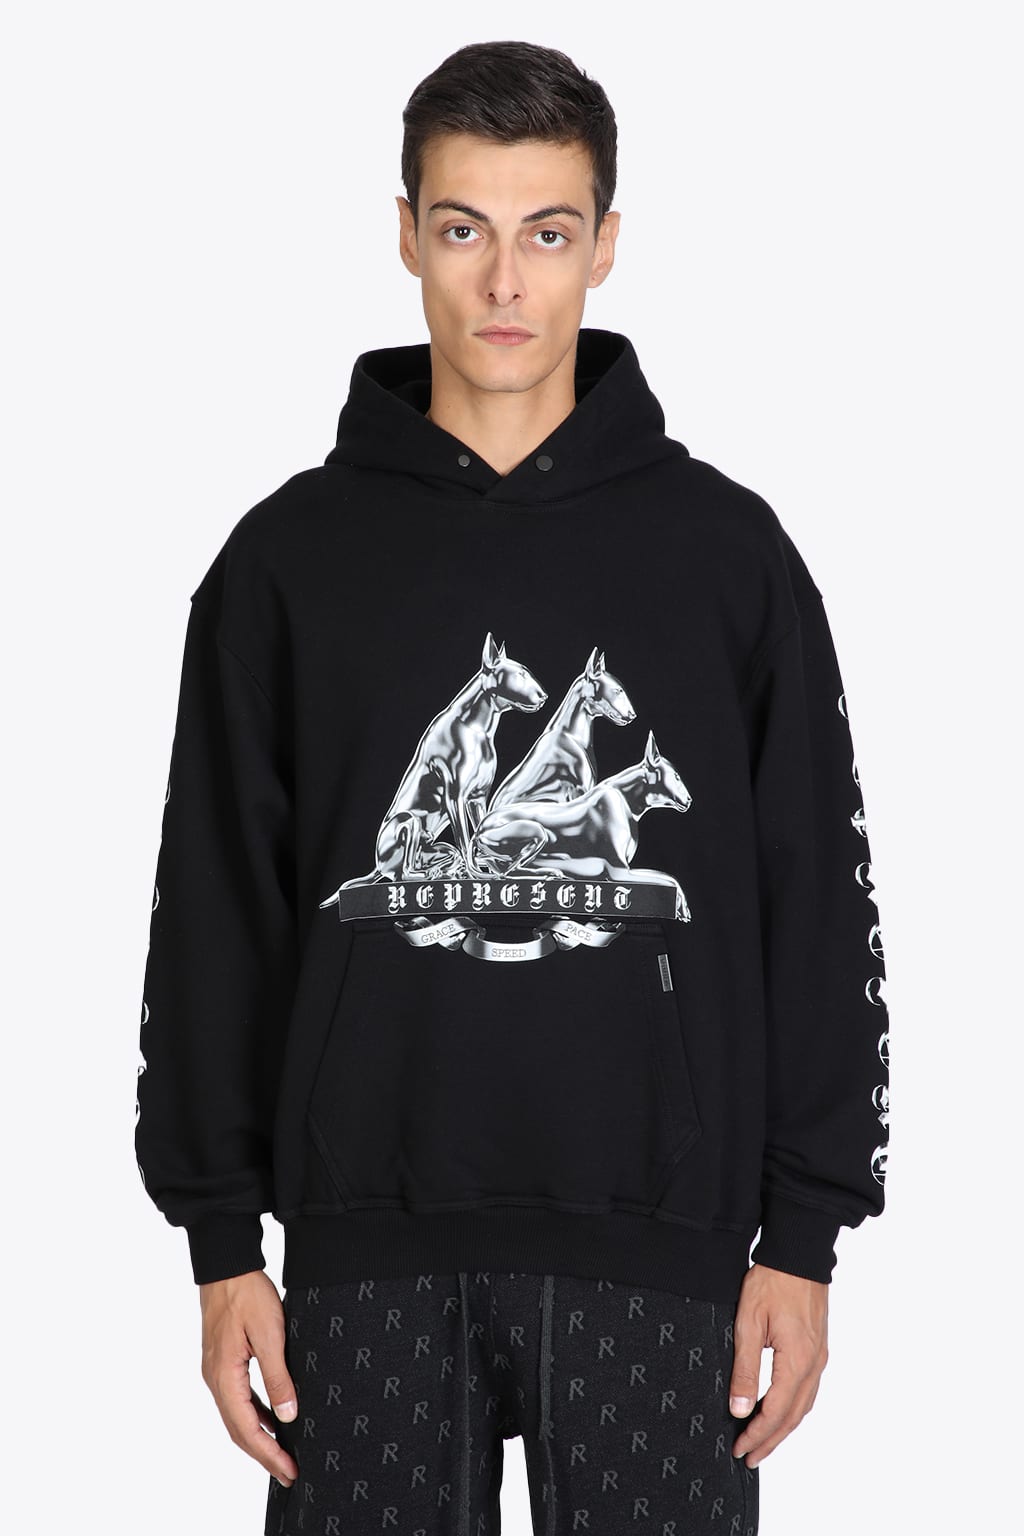 REPRESENT Bullterrier Hoodie Black cotton hoodie with bullterrier print - Bullterrier hoodie